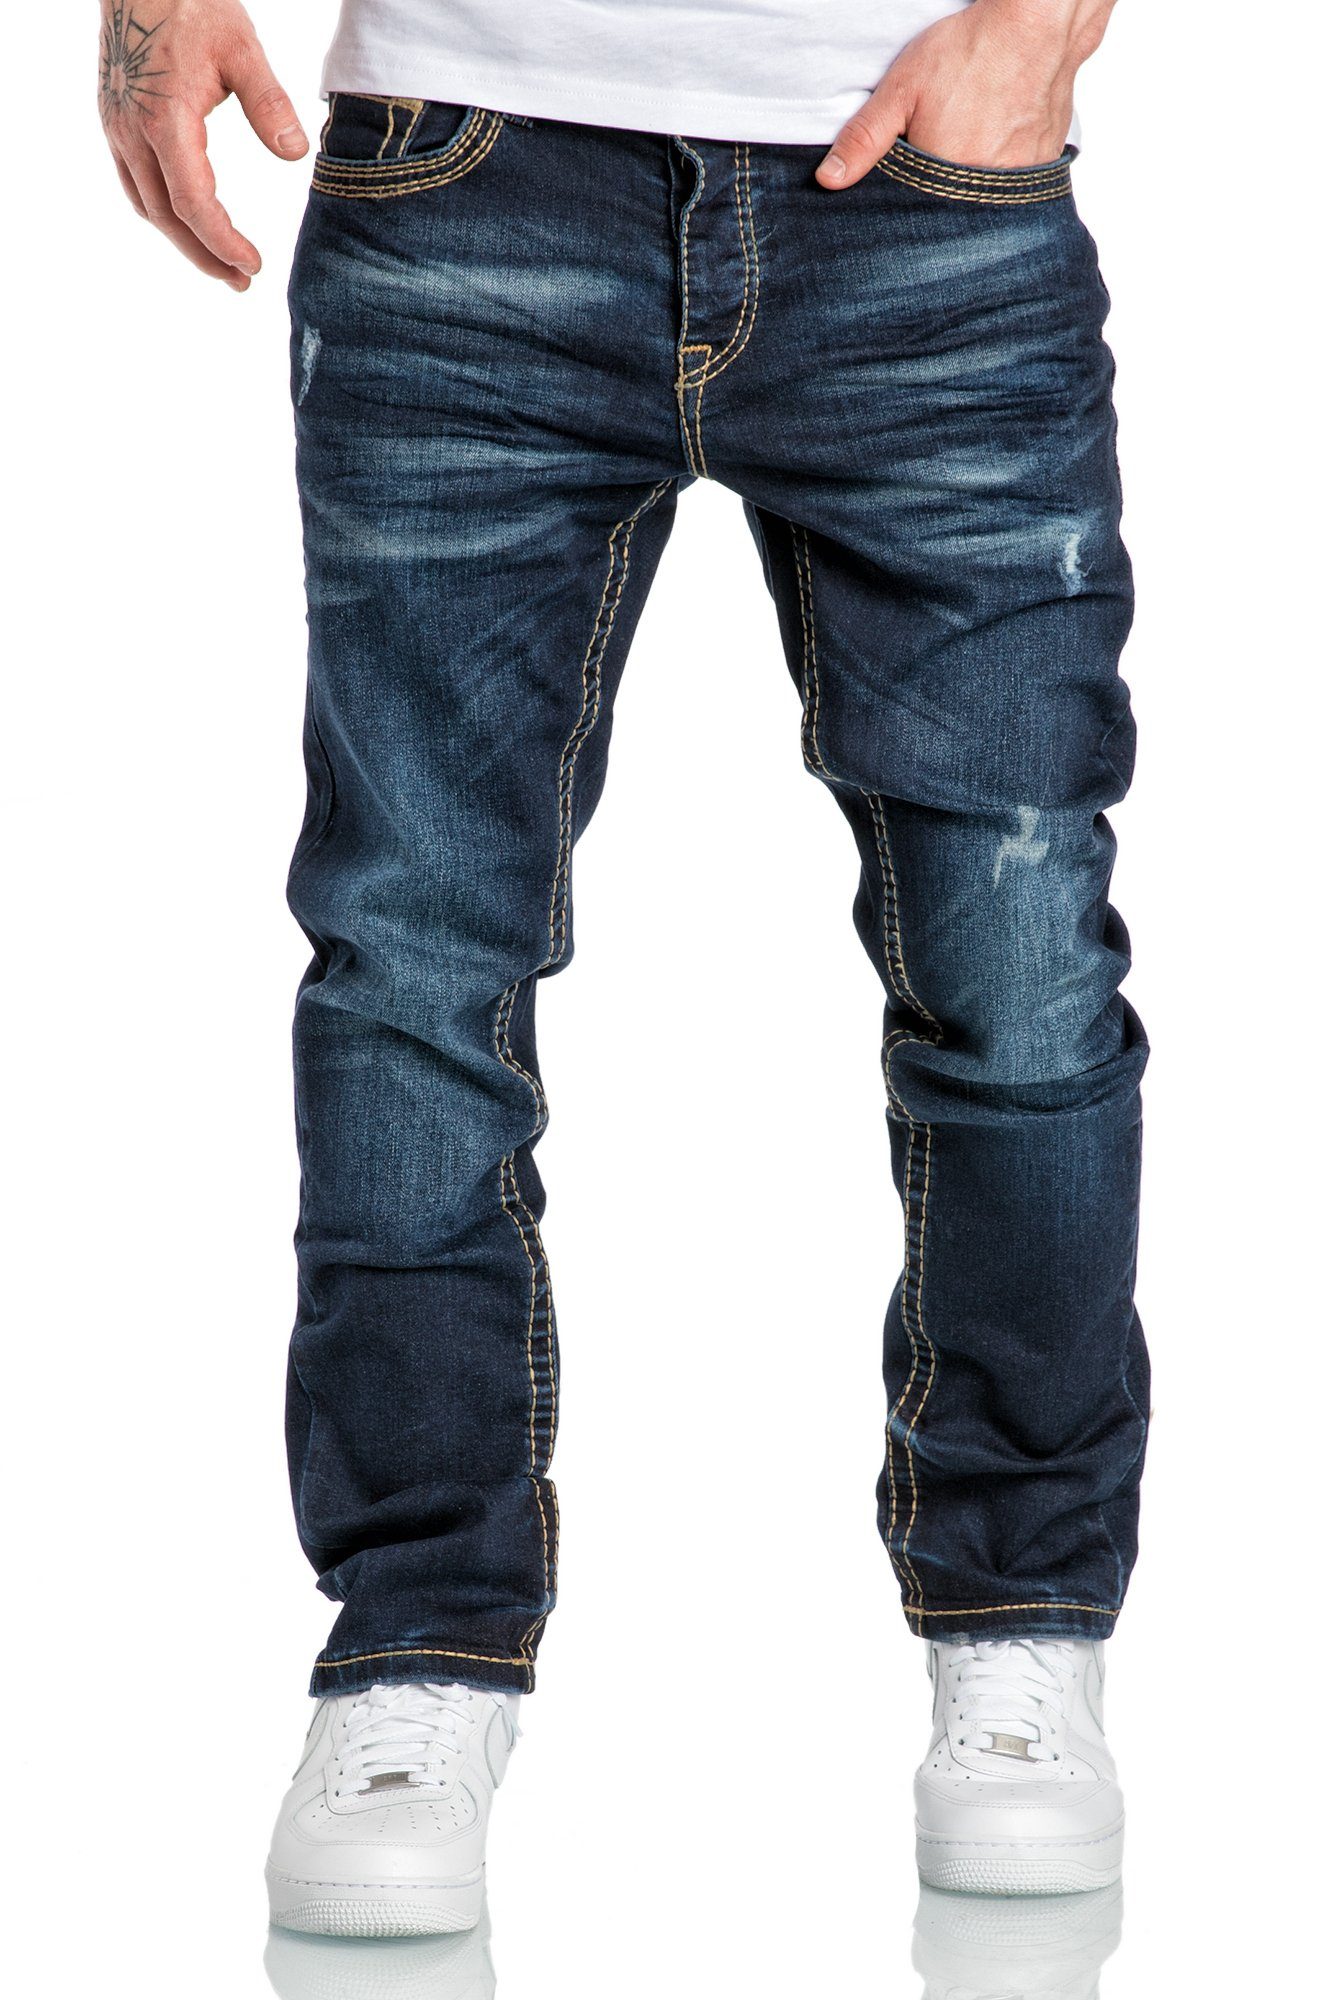 Amaci&Sons Stretch-Jeans ANCHORAGE Jeans Destroyed Regular Slim Herren Dicke Nähte Destroyed Regular Slim Denim Hose Fit